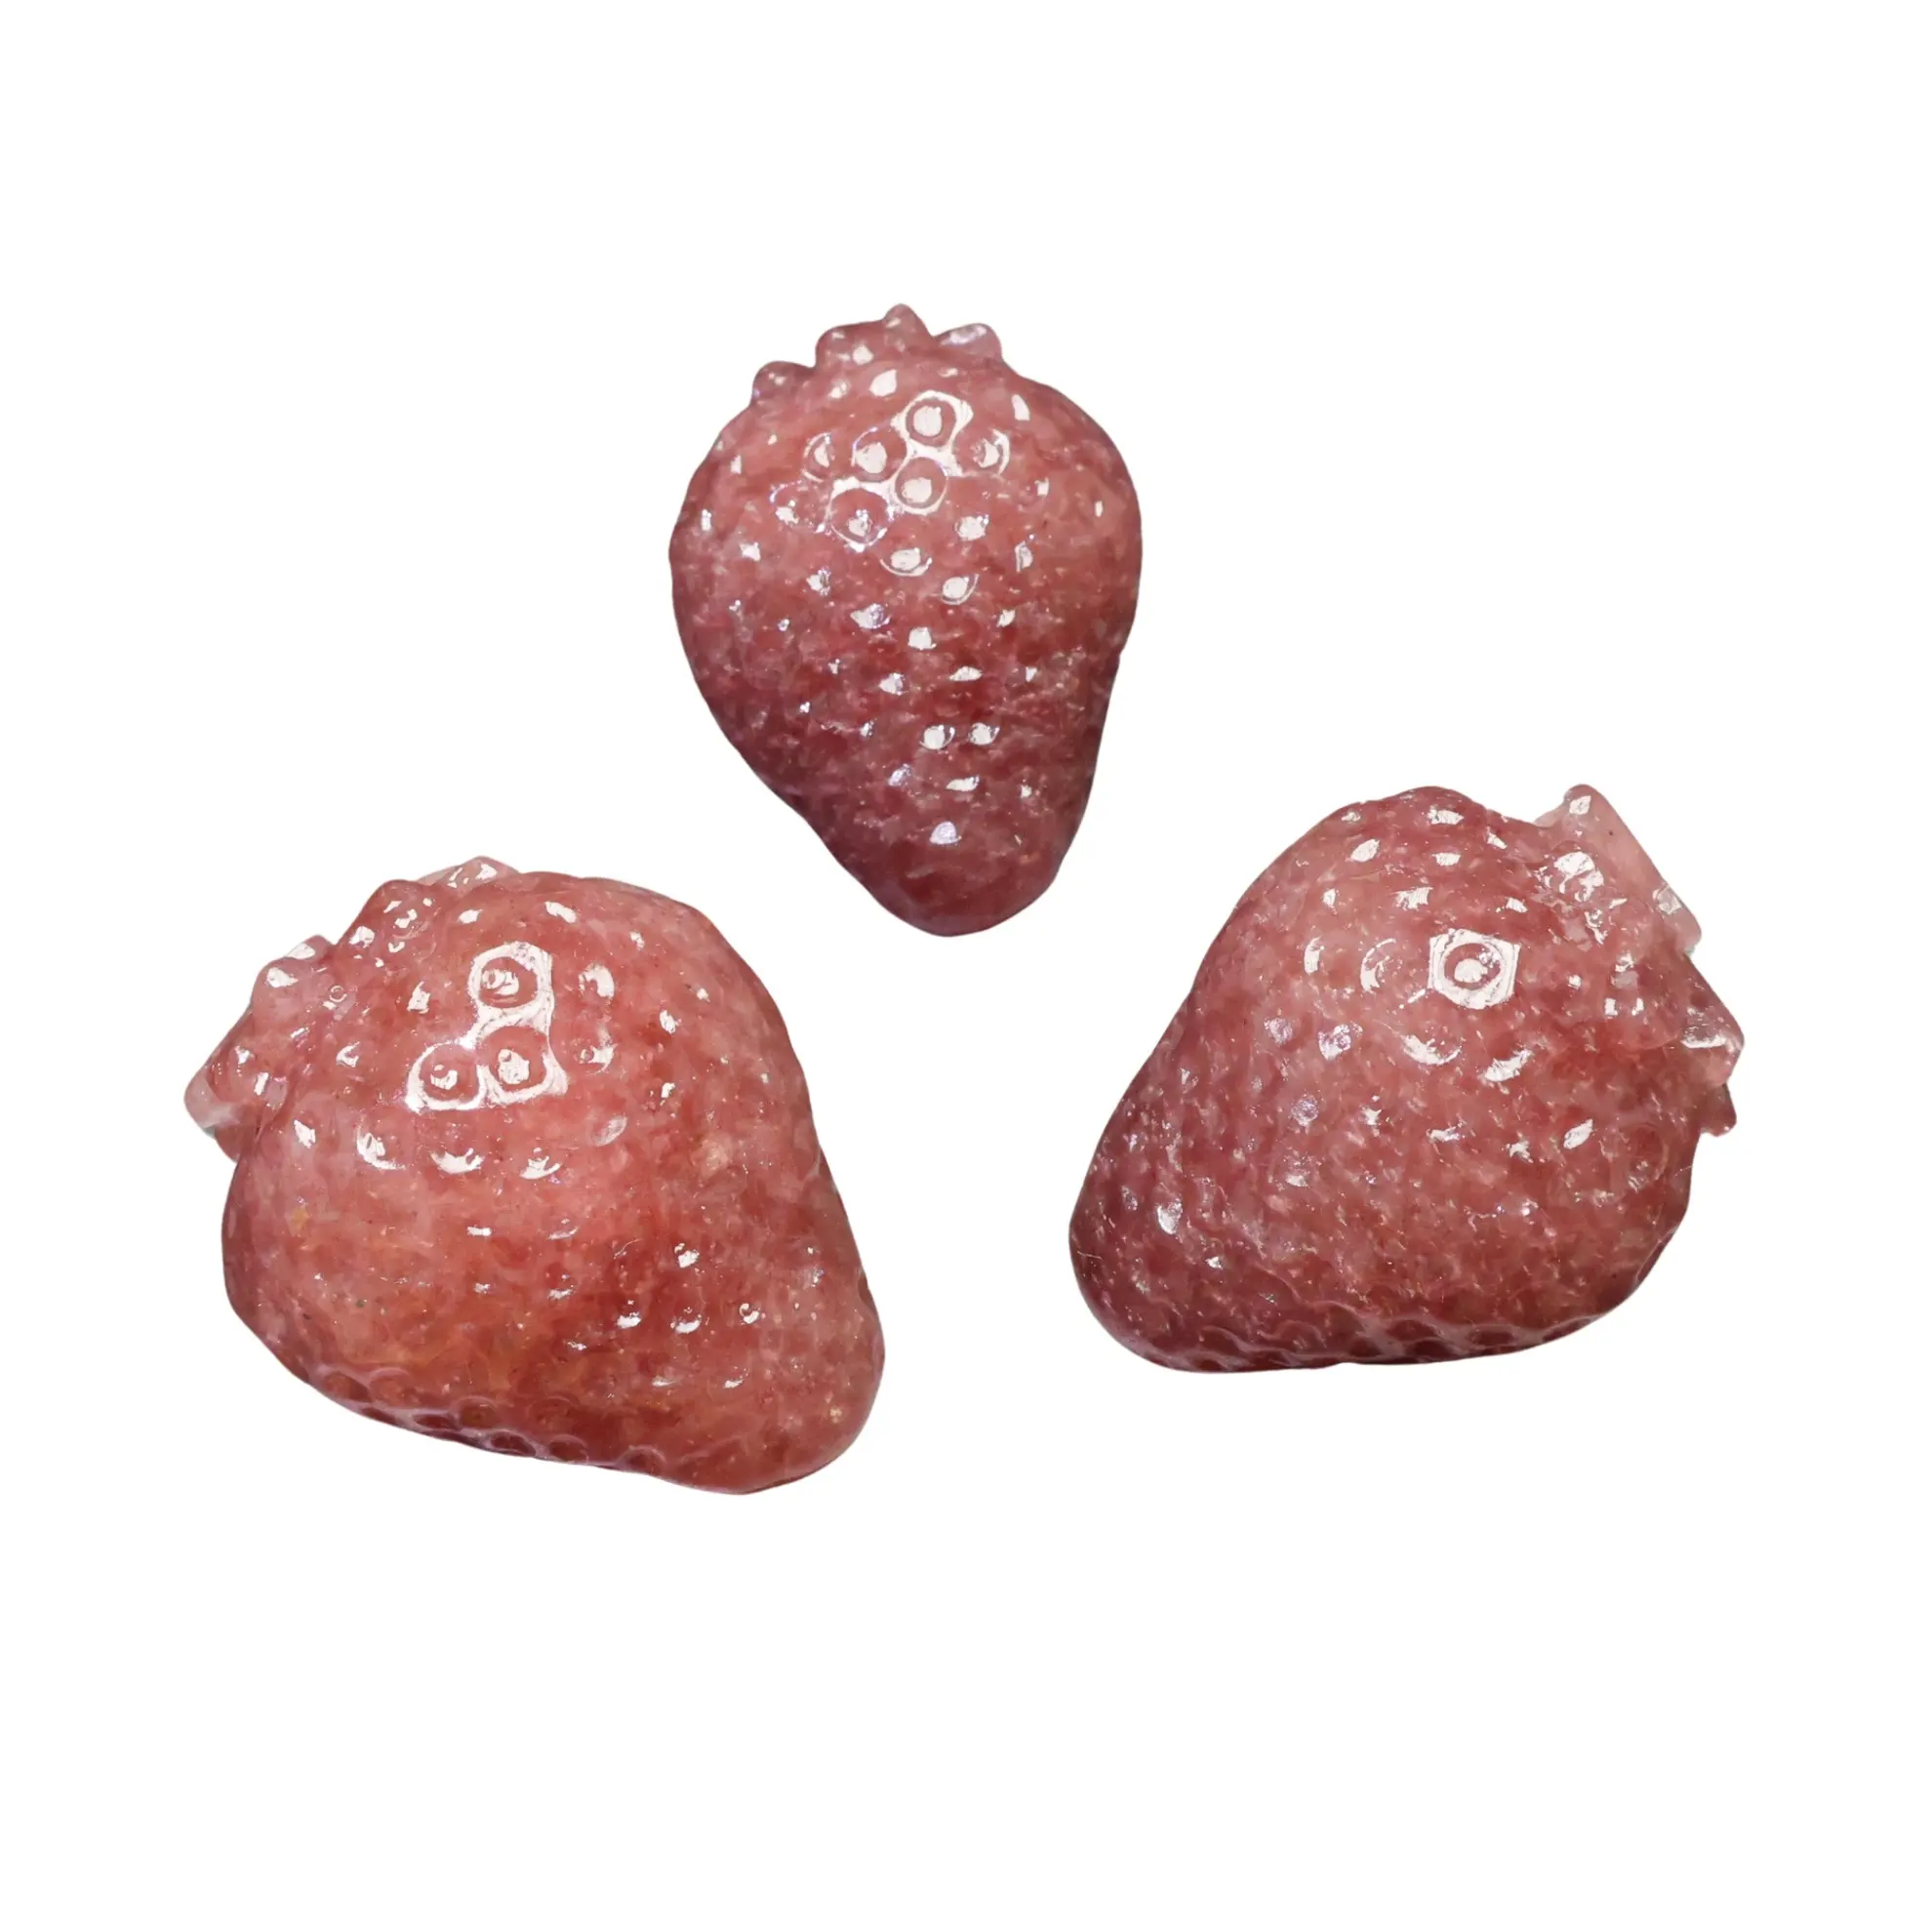 케니 크리스탈 도매 천연 크리스탈 조각 딸기 석영 딸기 과일 조각 가정 장식 및 선물